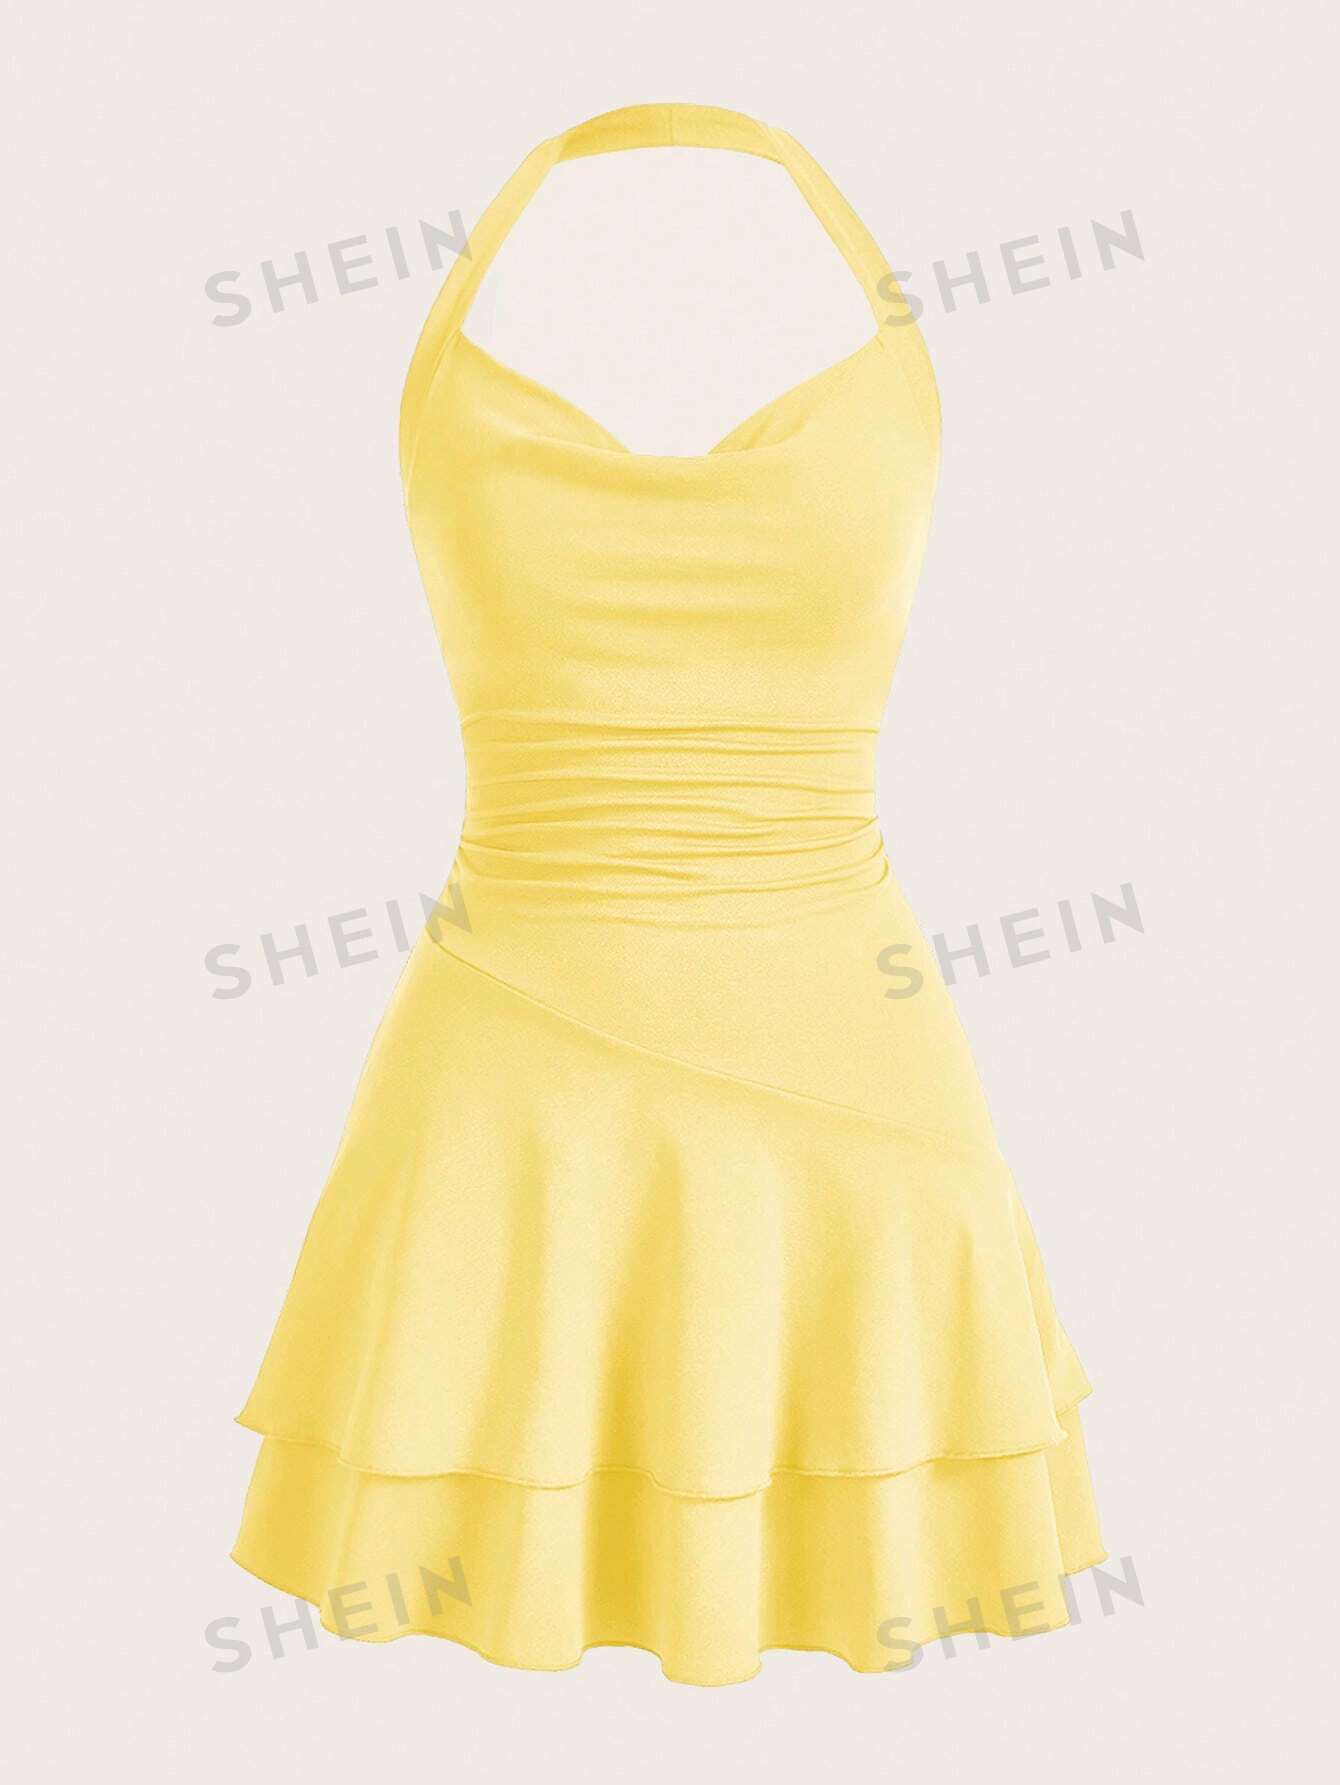 вязаное облегающее платье миди из хлопка цвет – бежевый SHEIN MOD однотонное женское платье с бретелькой на шее и многослойным подолом, желтый